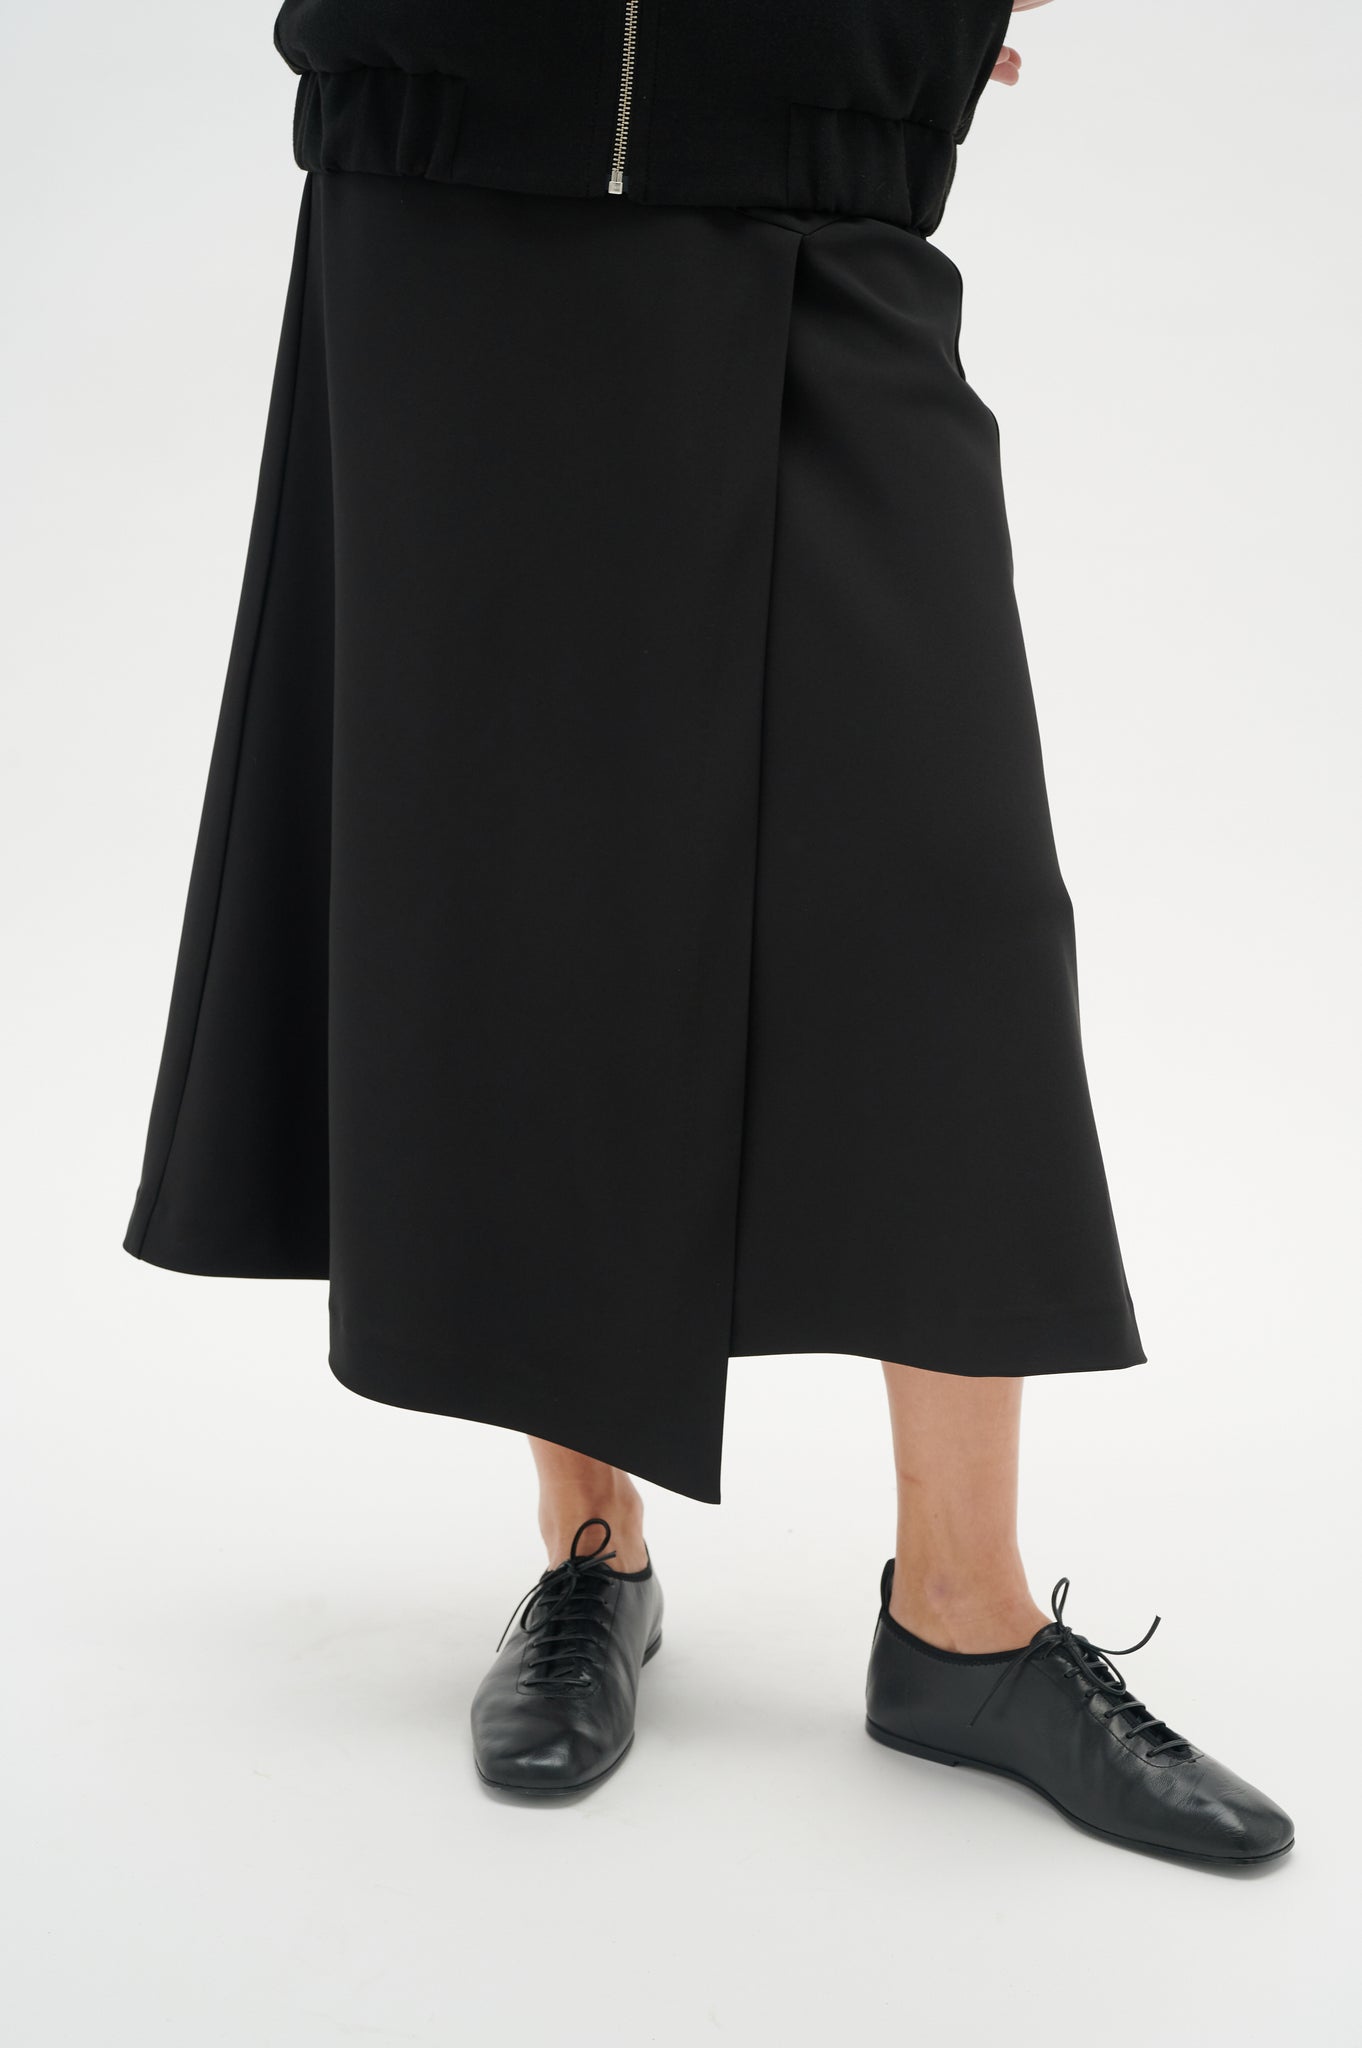 In Wear Zinni Skirt, Black